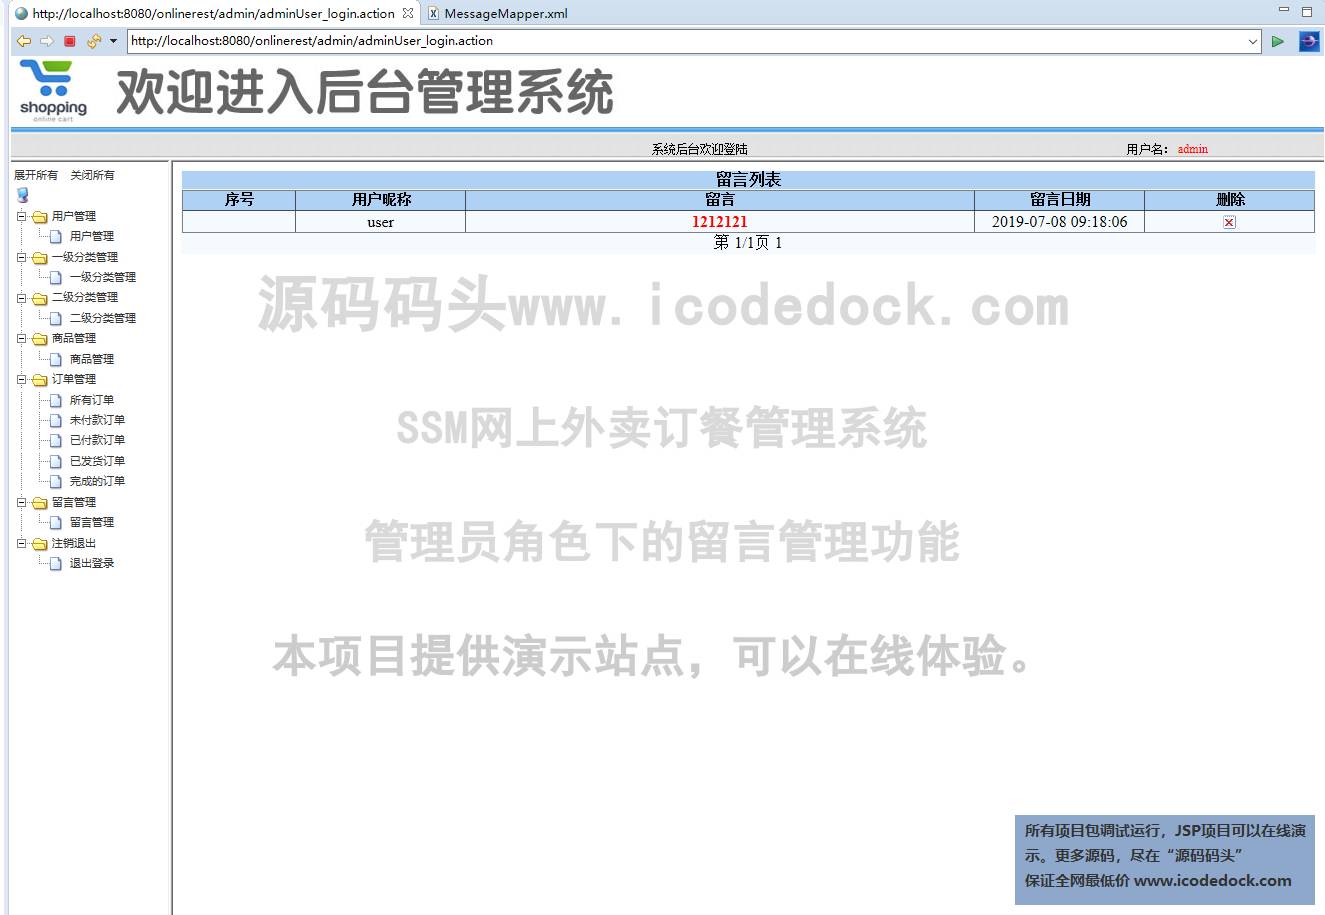 源码码头-SSM网上外卖订餐管理系统-管理员-留言管理